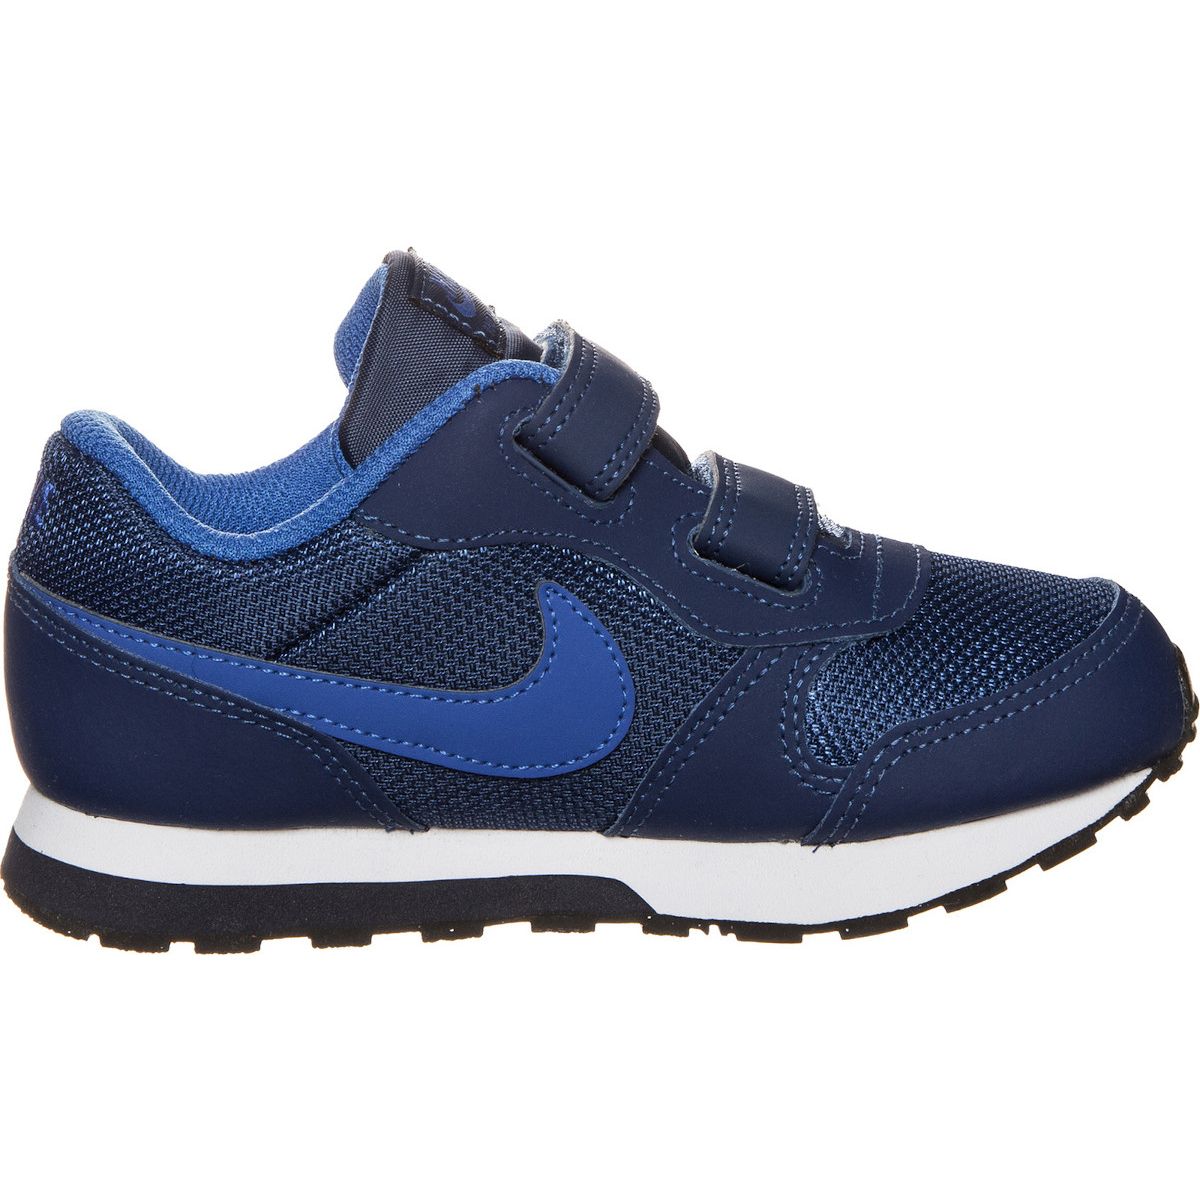 Nike MD Runner 2 (TDV) Boys' Toddler Shoes 806255-405